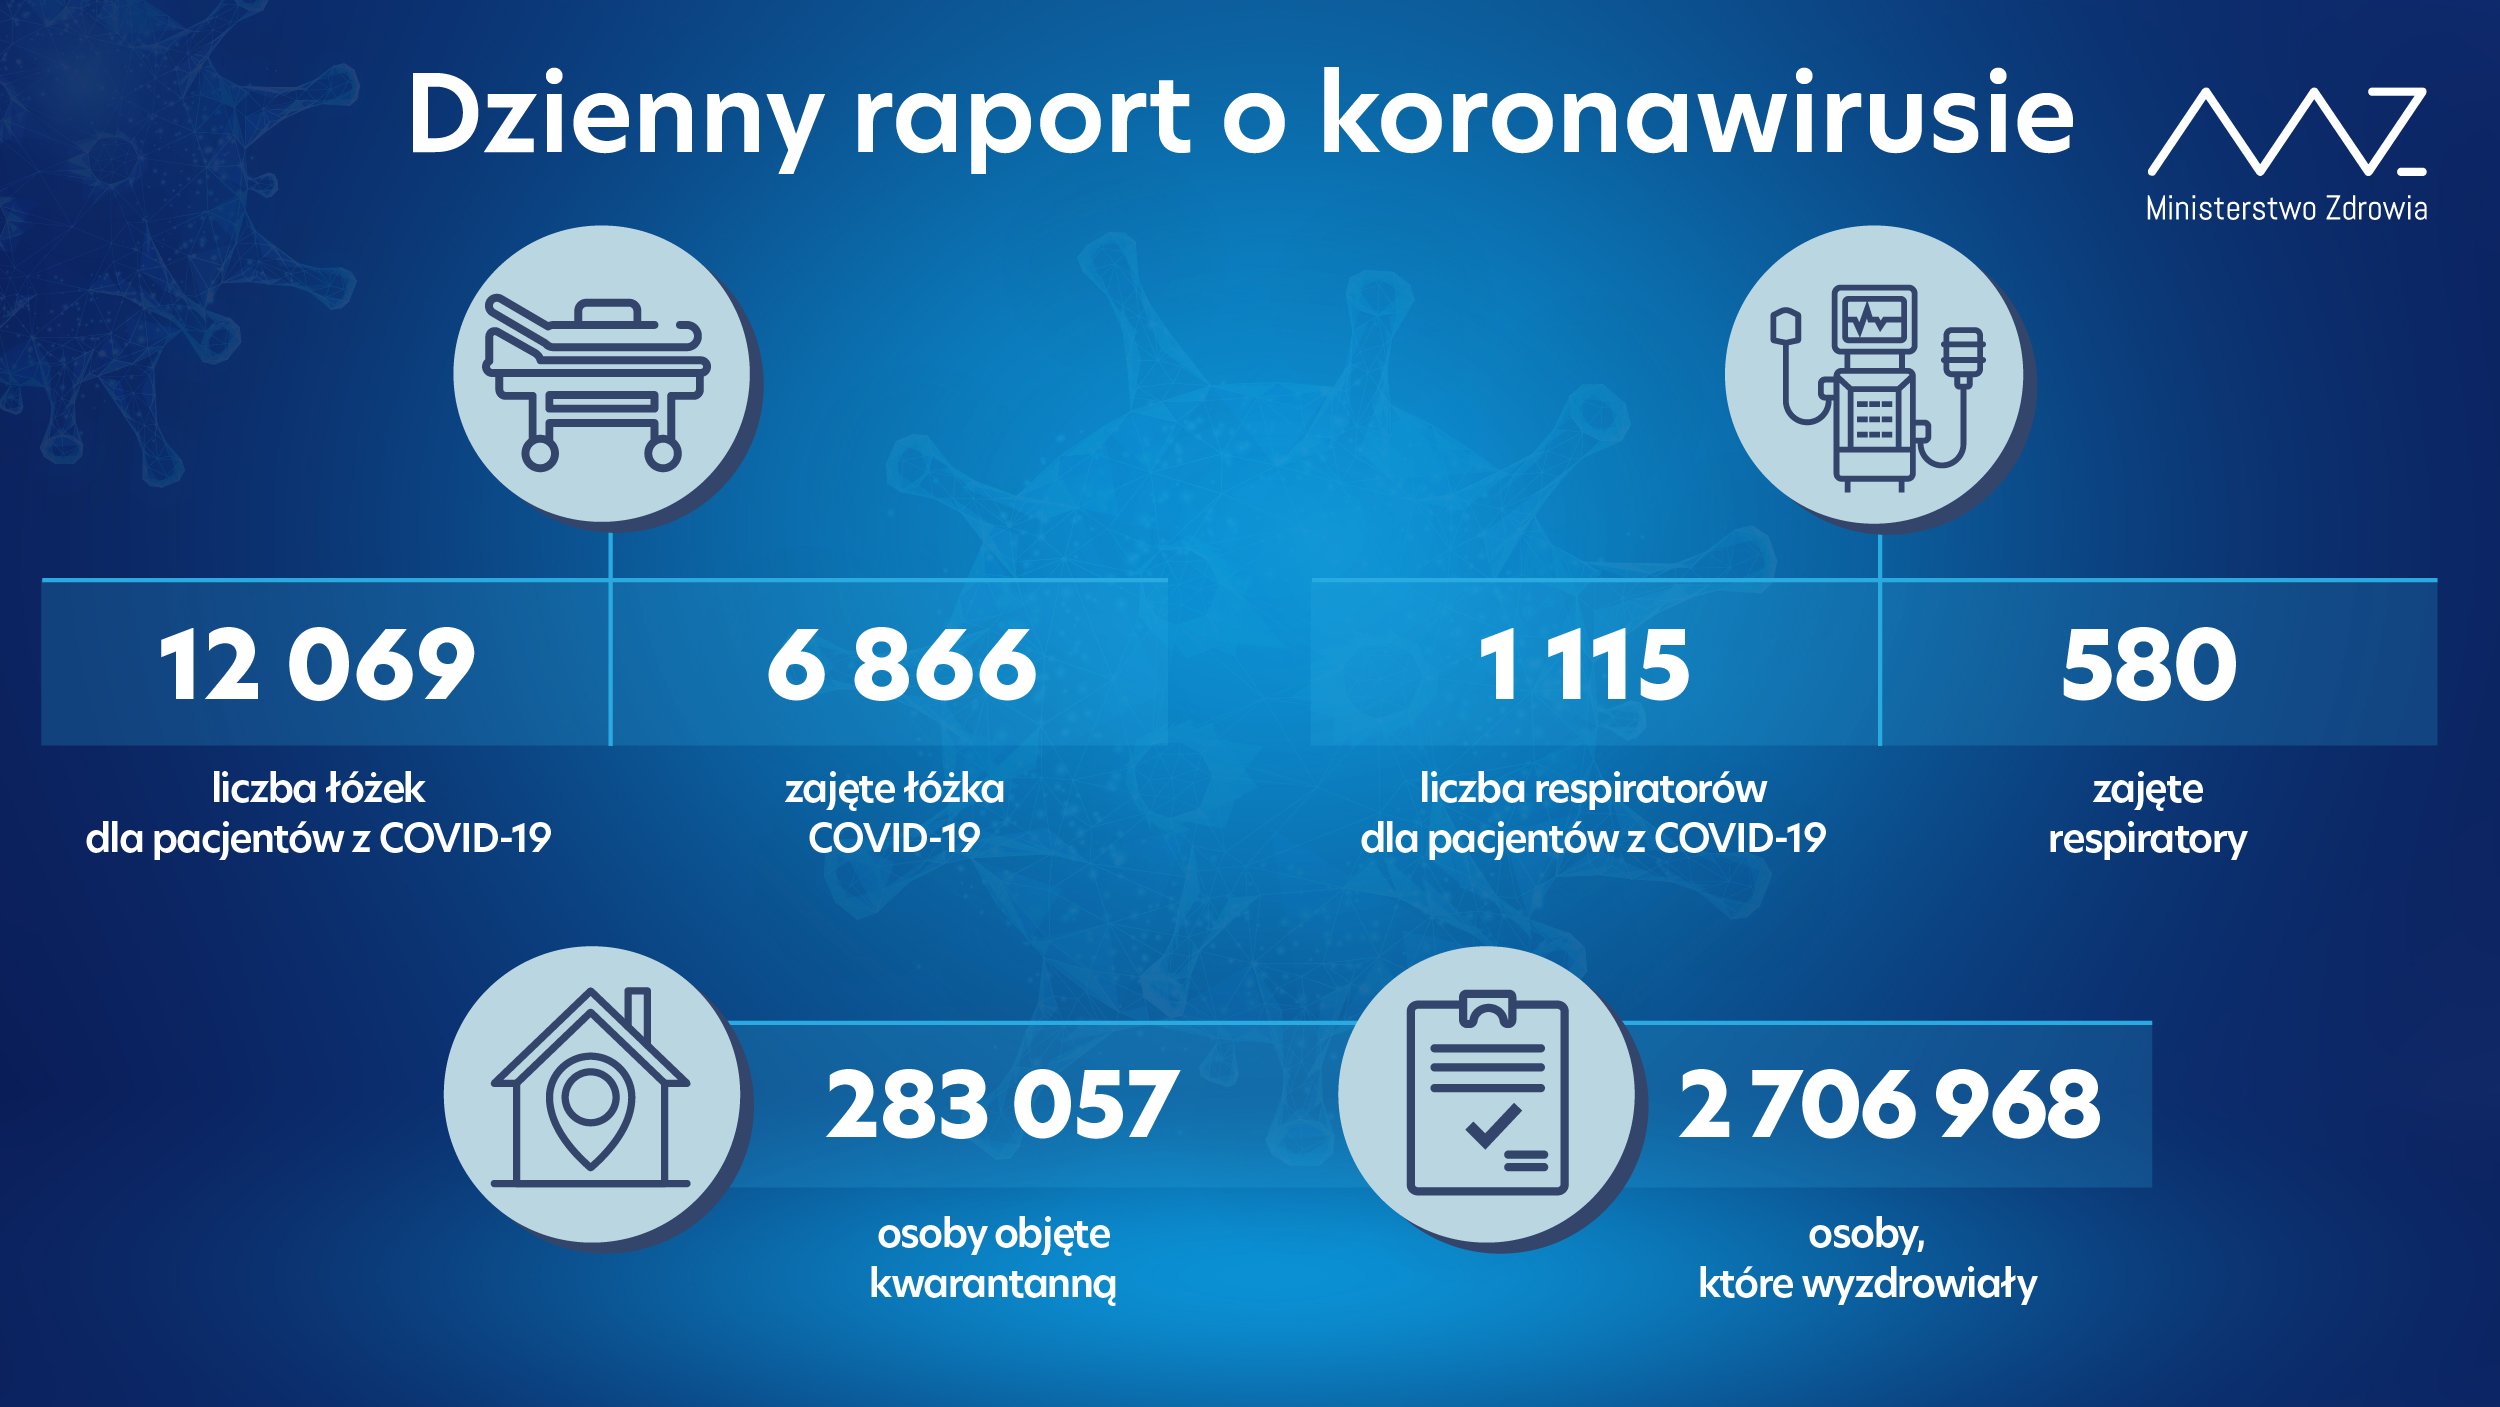 Ponad 1300 pacjentów w szpitalach z COVID-19 w regionie. Woj. mazowieckie i lubelskie nadal z największą liczbą nowych zakażeń